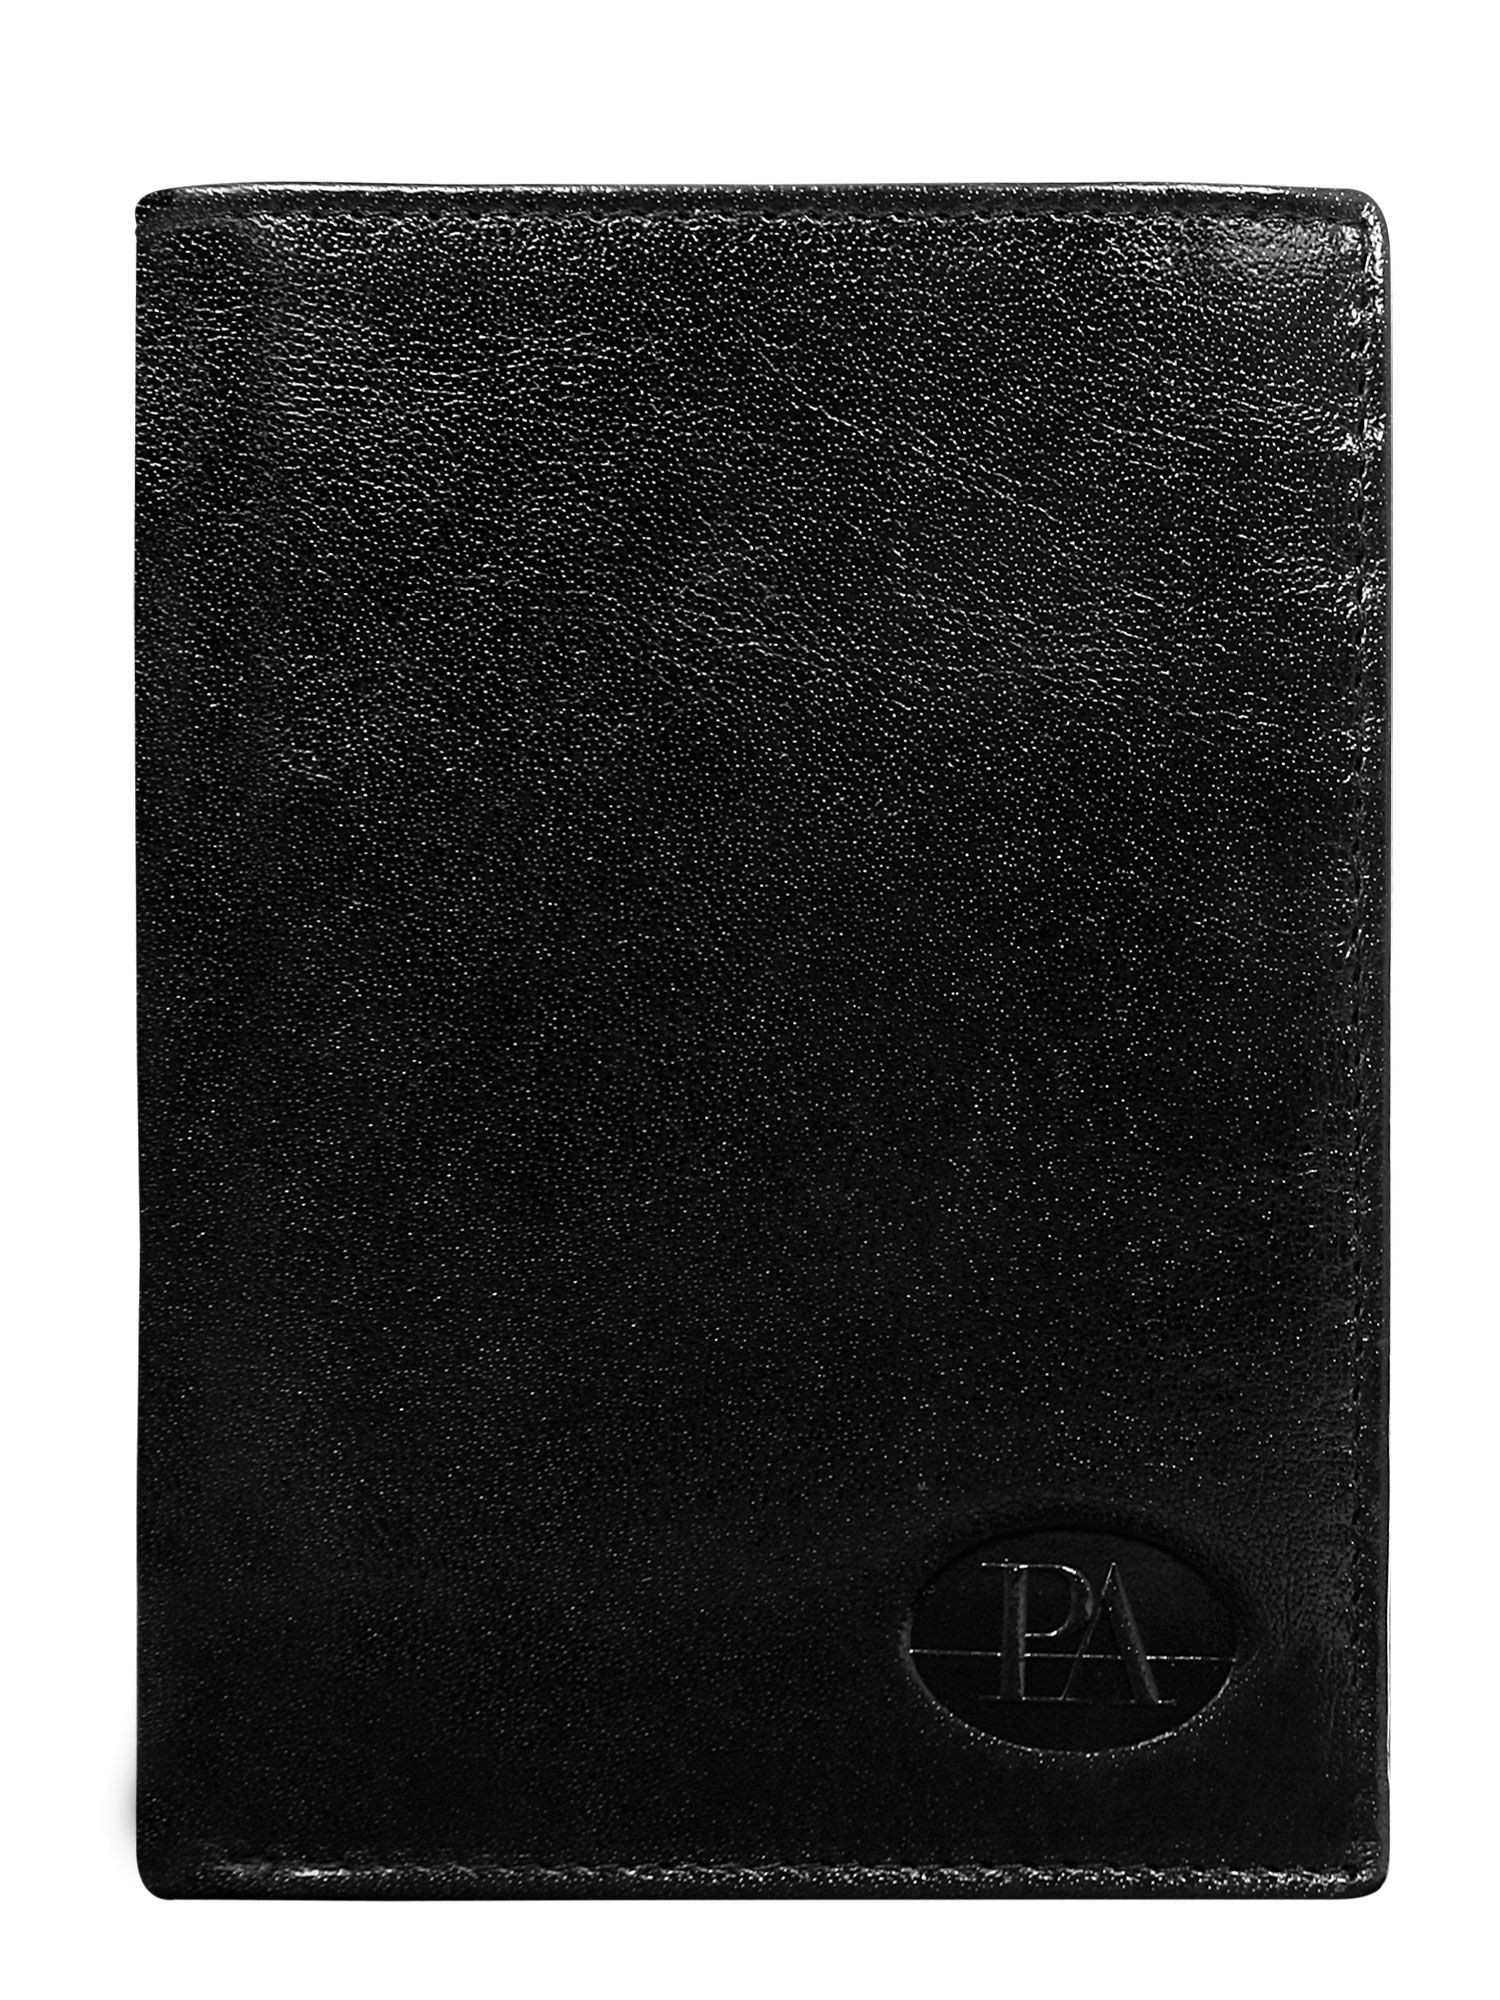 Peněženka CE PR PW 004 BTU.30 černá jedna velikost